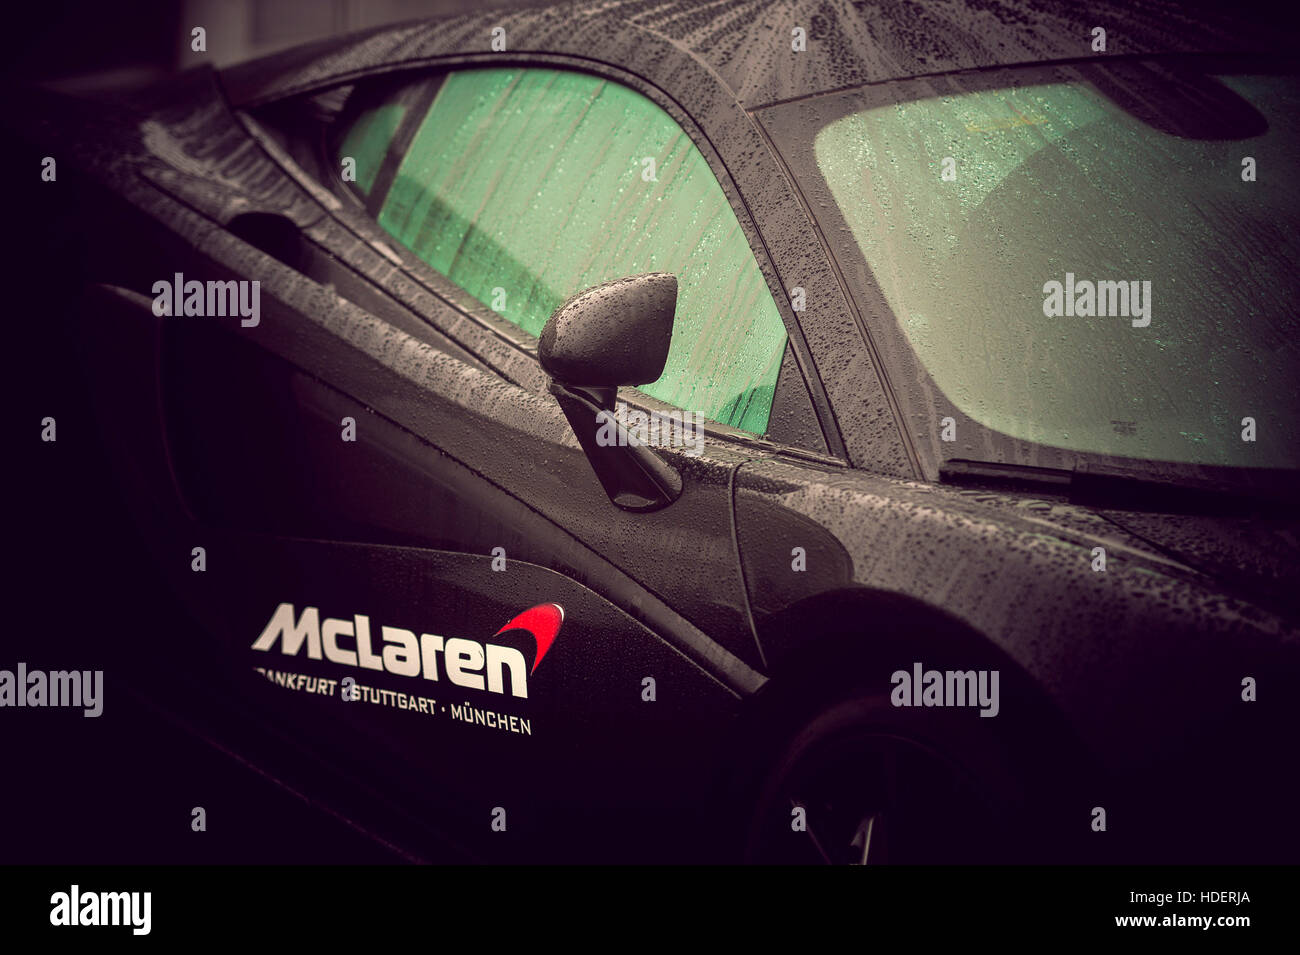 McLaren Sportscar Detail - McLaren Germany Stock Photo